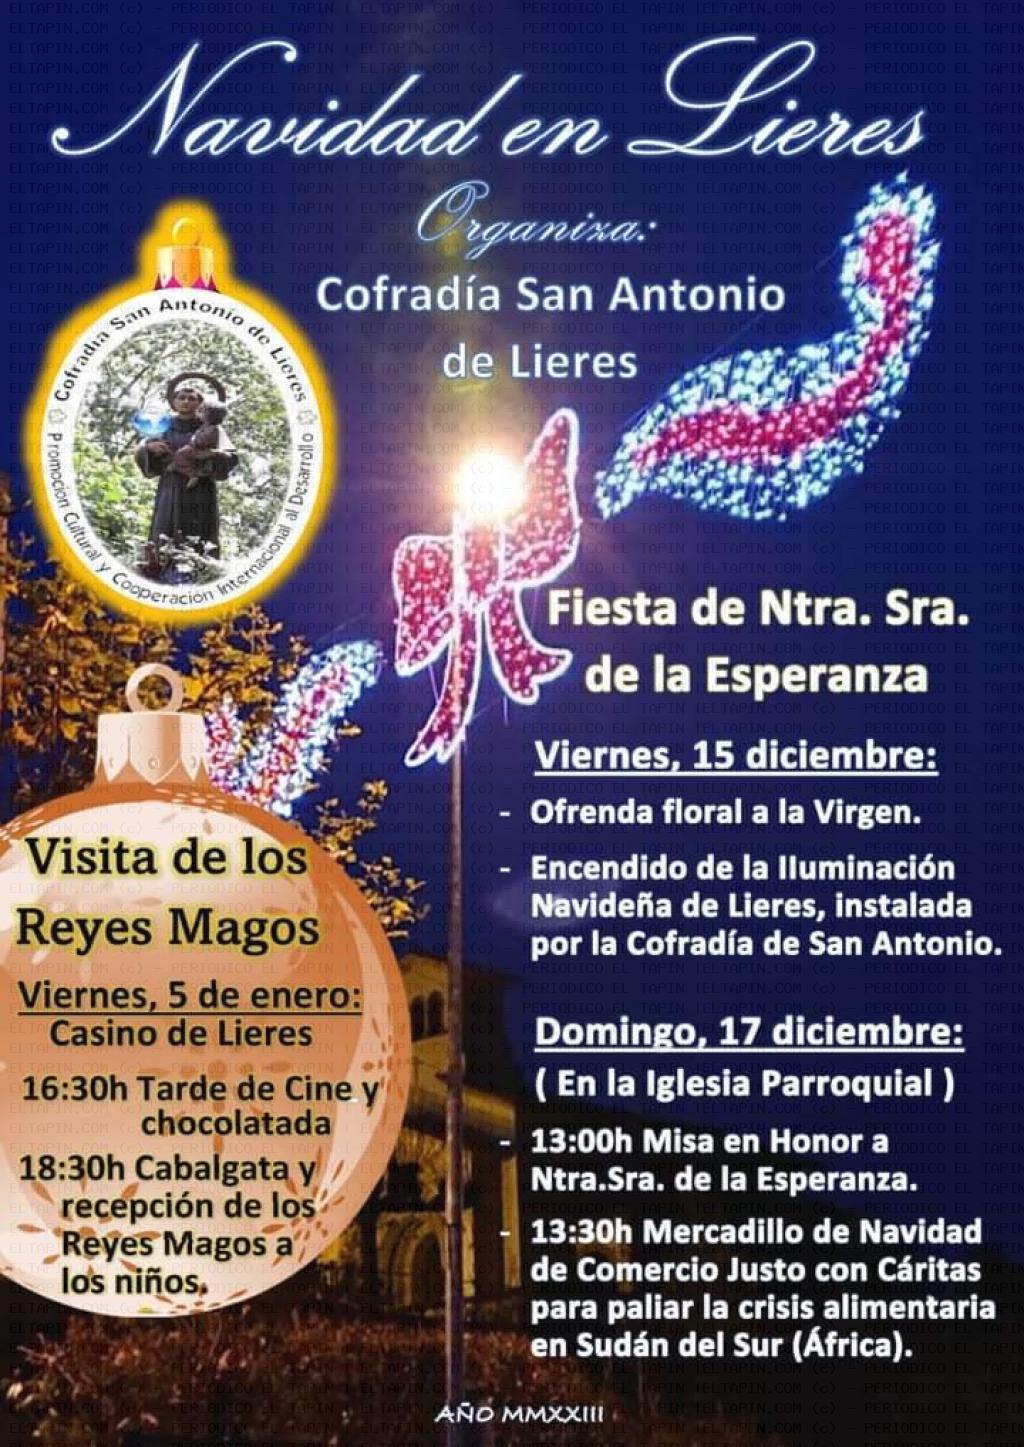 El Tapin - La Cofradía de San Antonio de Lieres organiza un variado programa de actividades navideñas